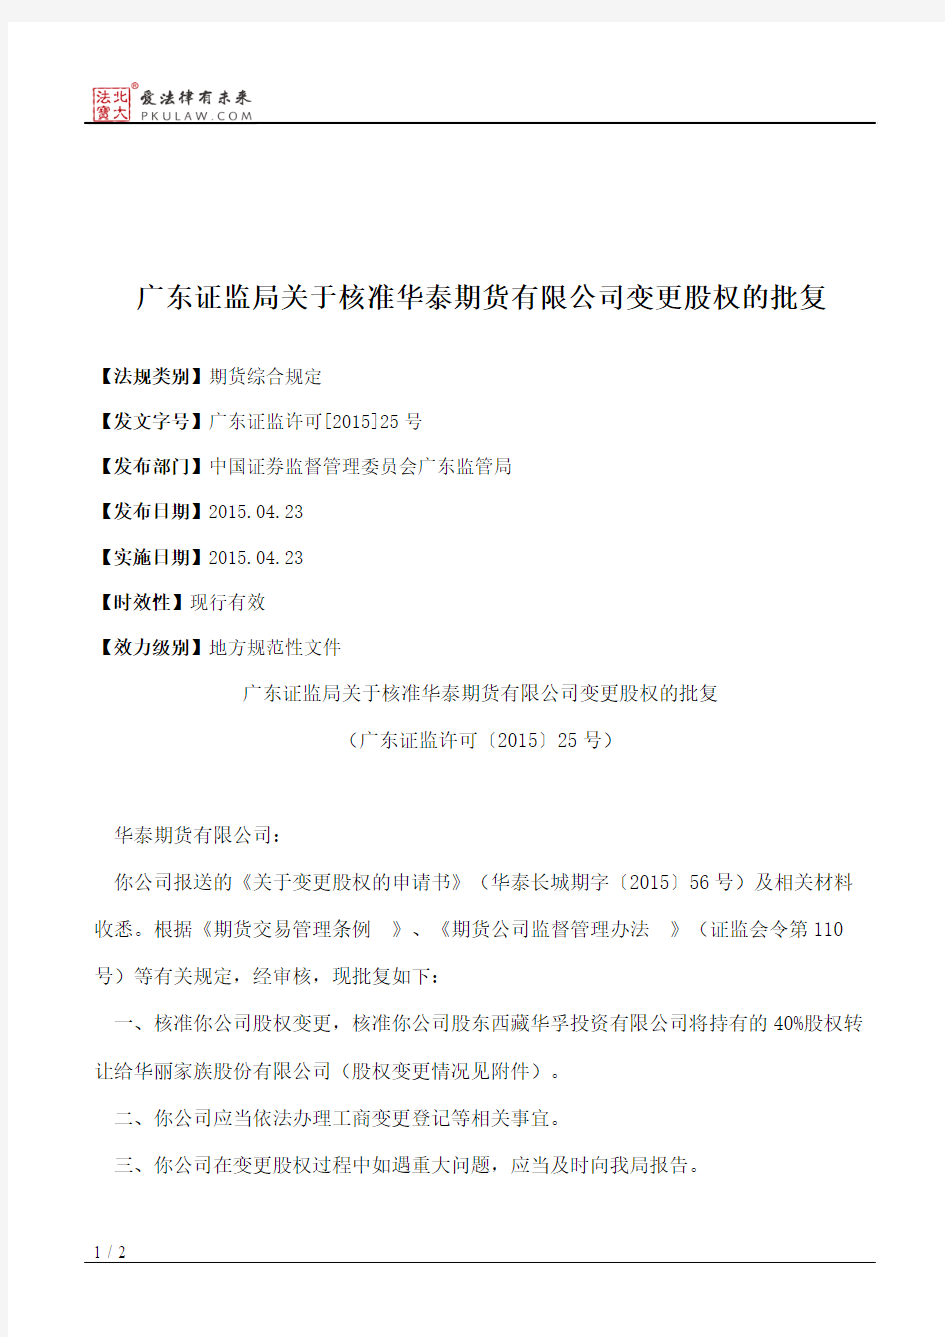 广东证监局关于核准华泰期货有限公司变更股权的批复